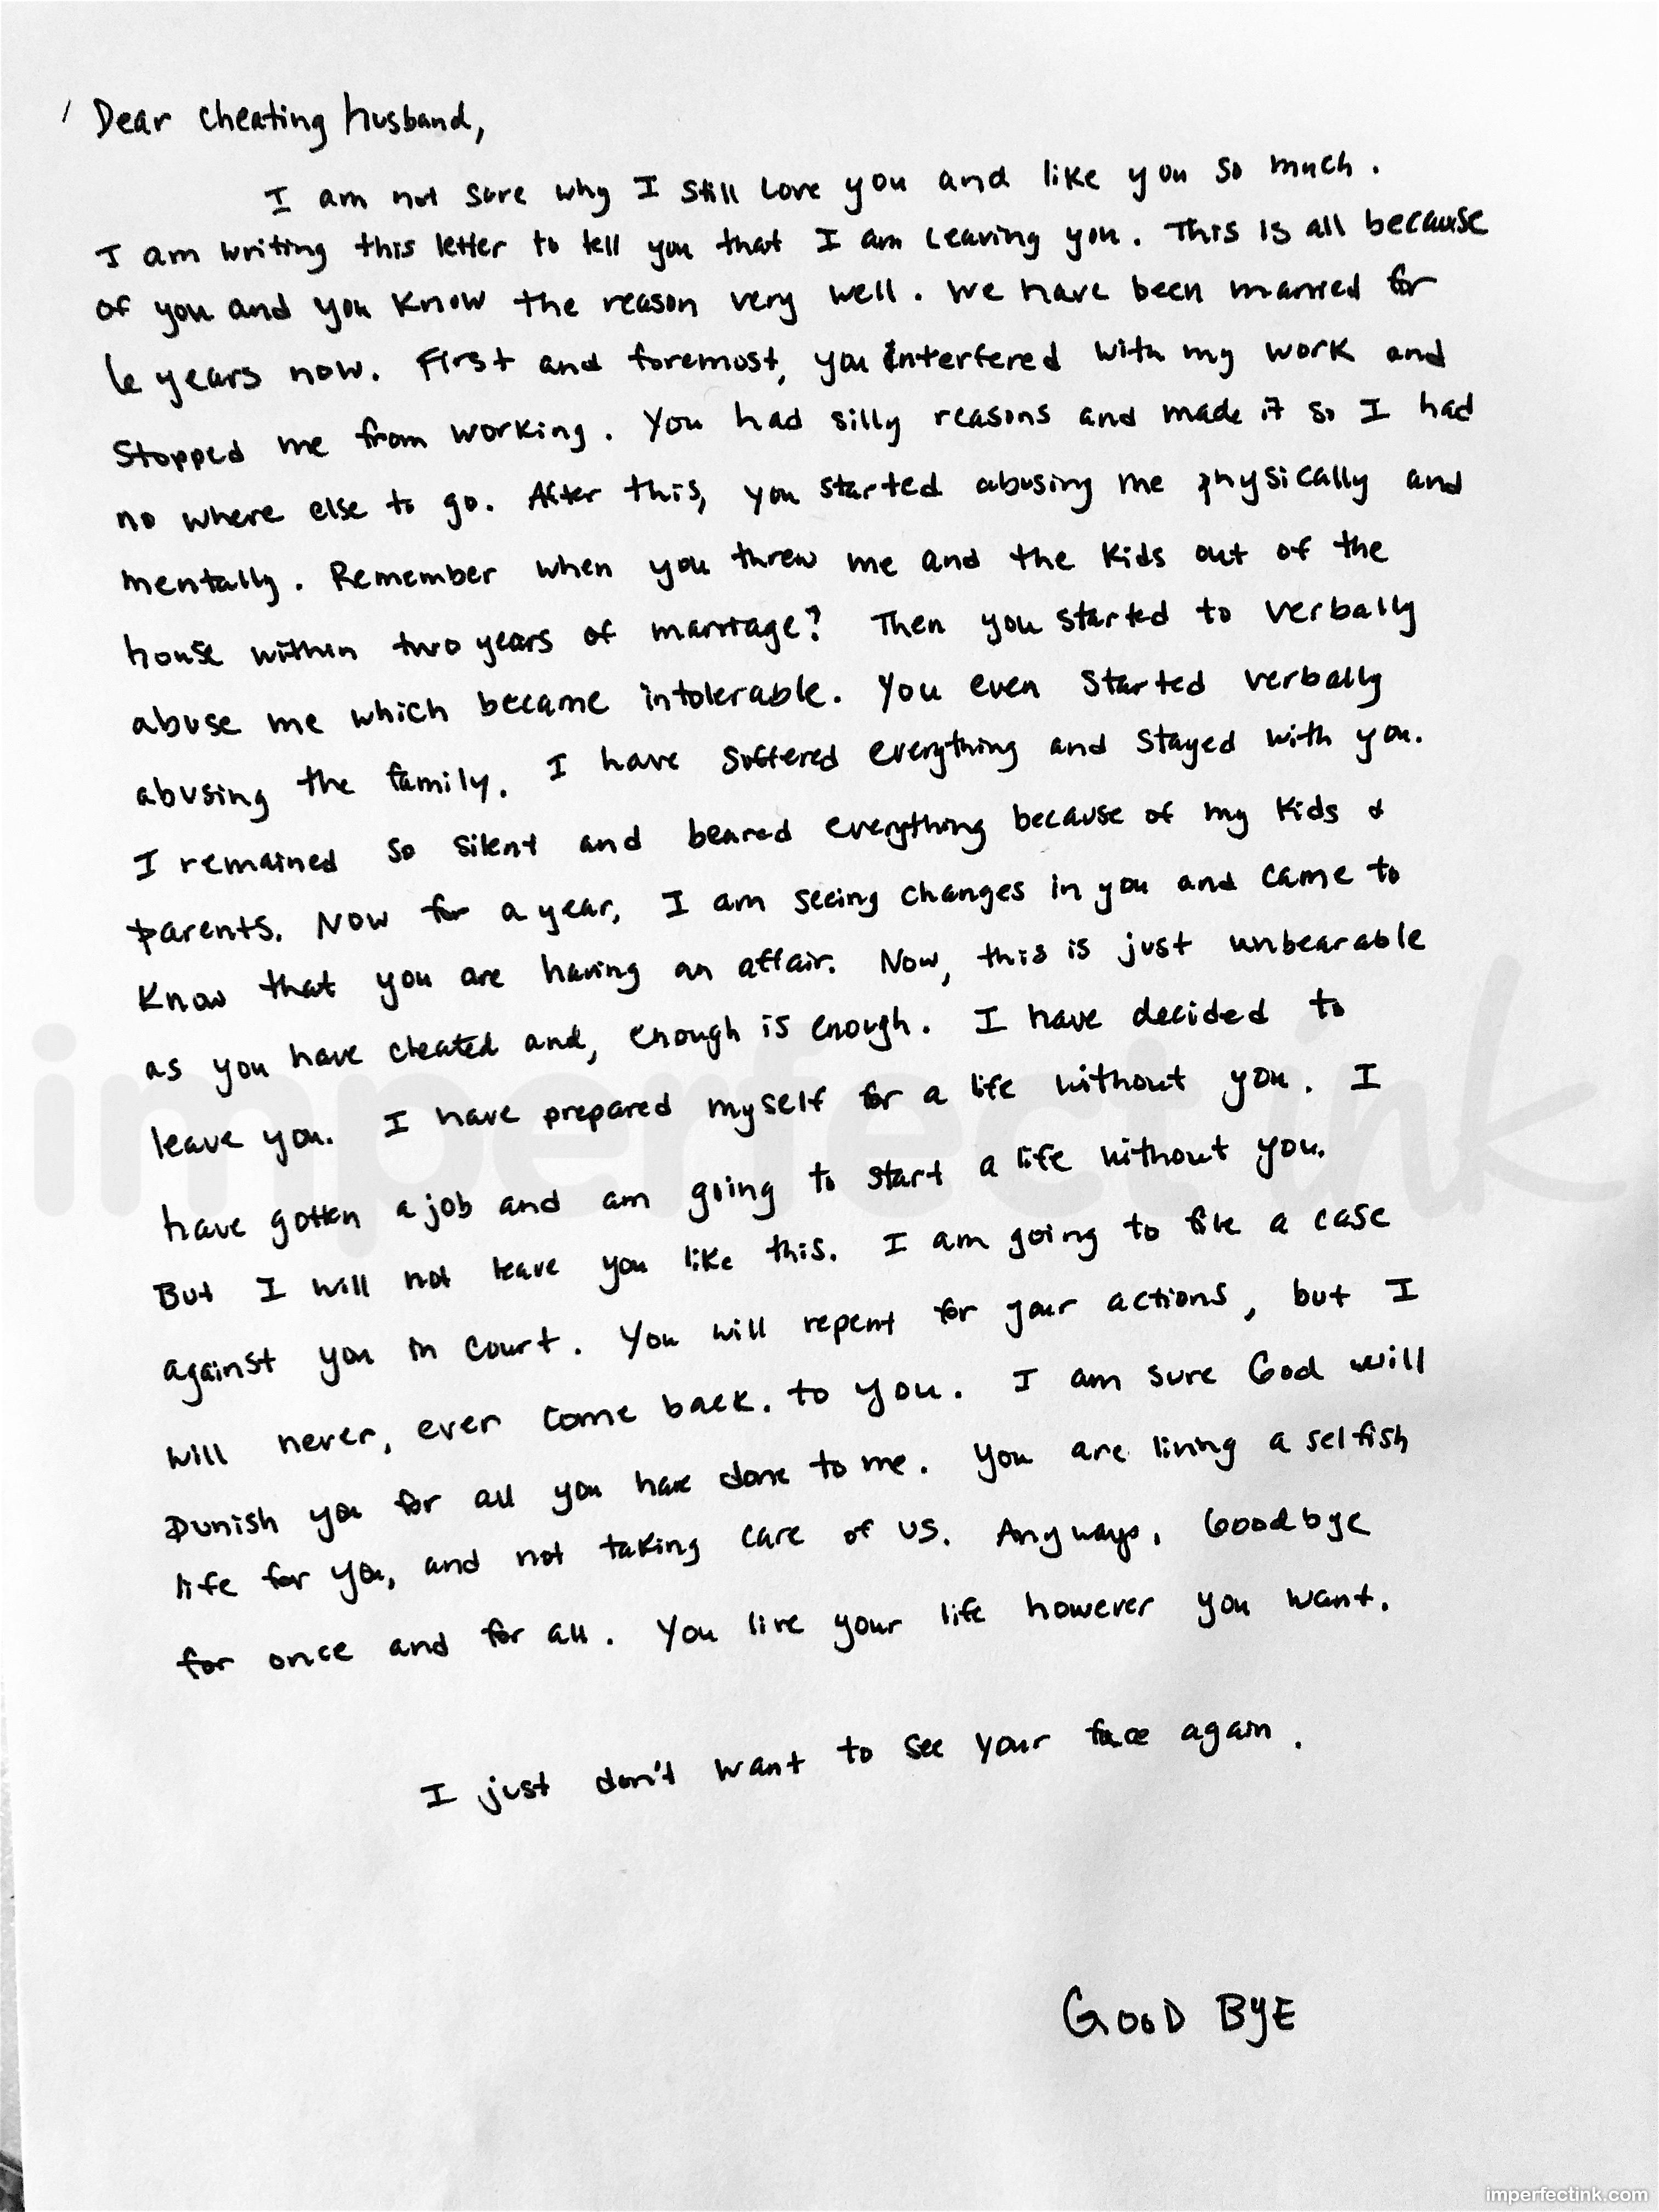 dear boyfriend letter